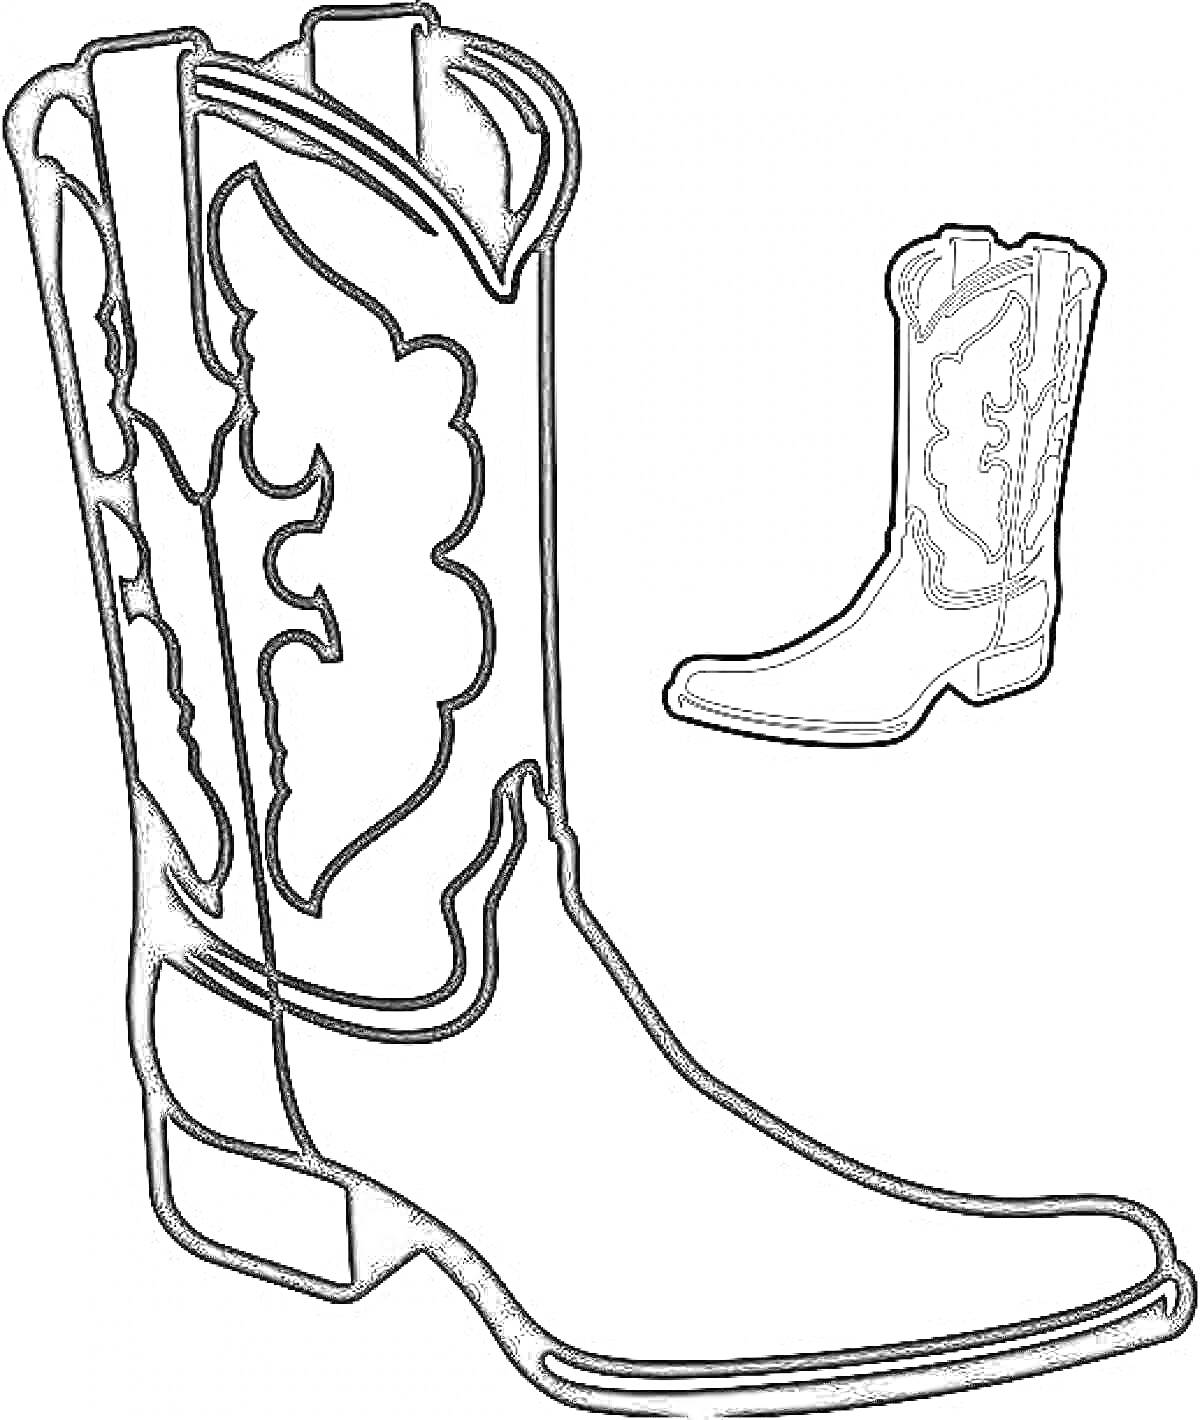 Ковбойский сапог с декоративным узором на длинном ботинке и маленьким изображением того же сапога